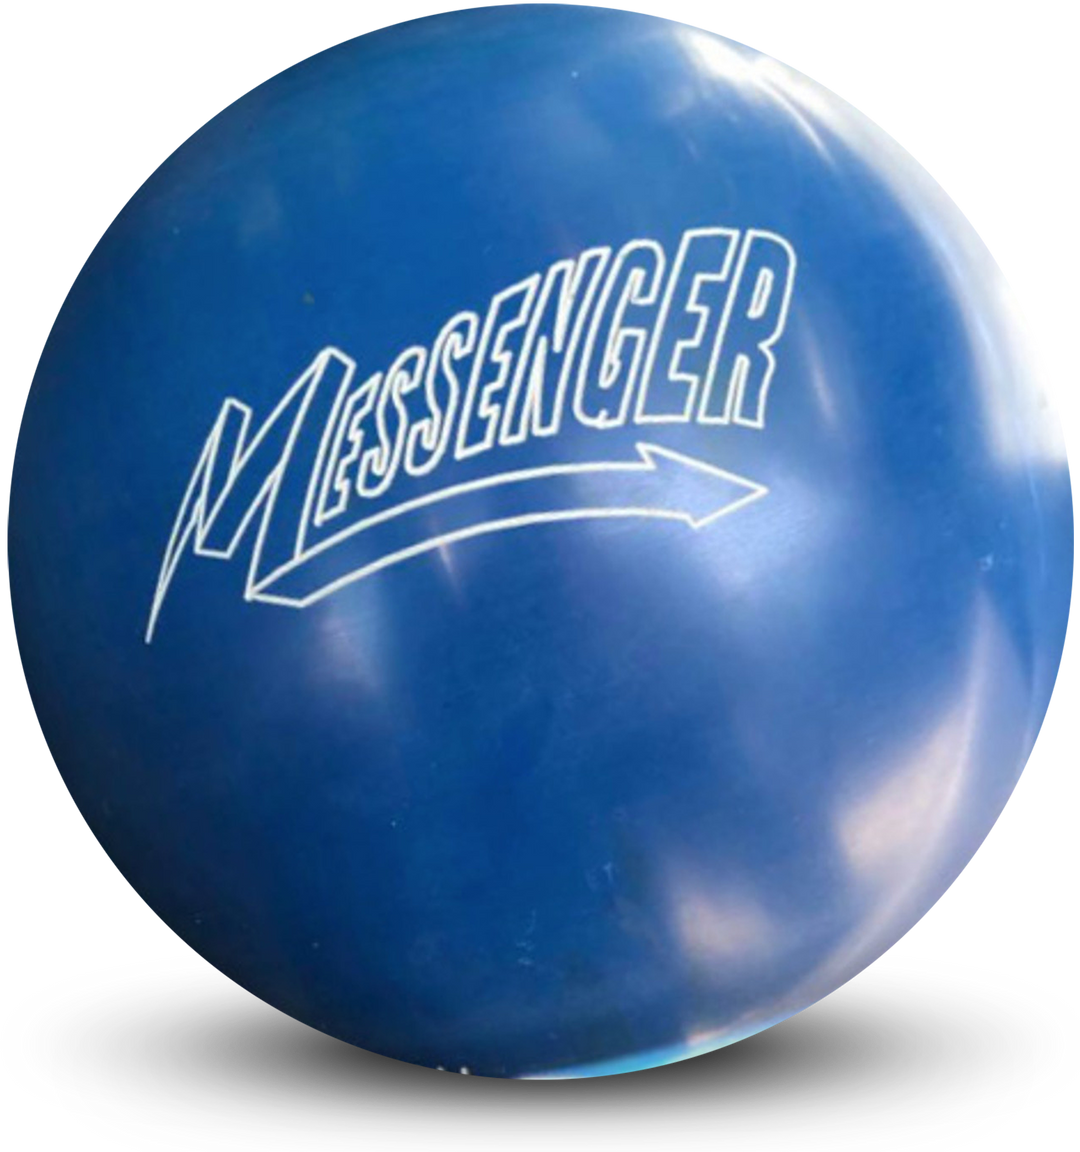 Messenger Blue Bowling Ball